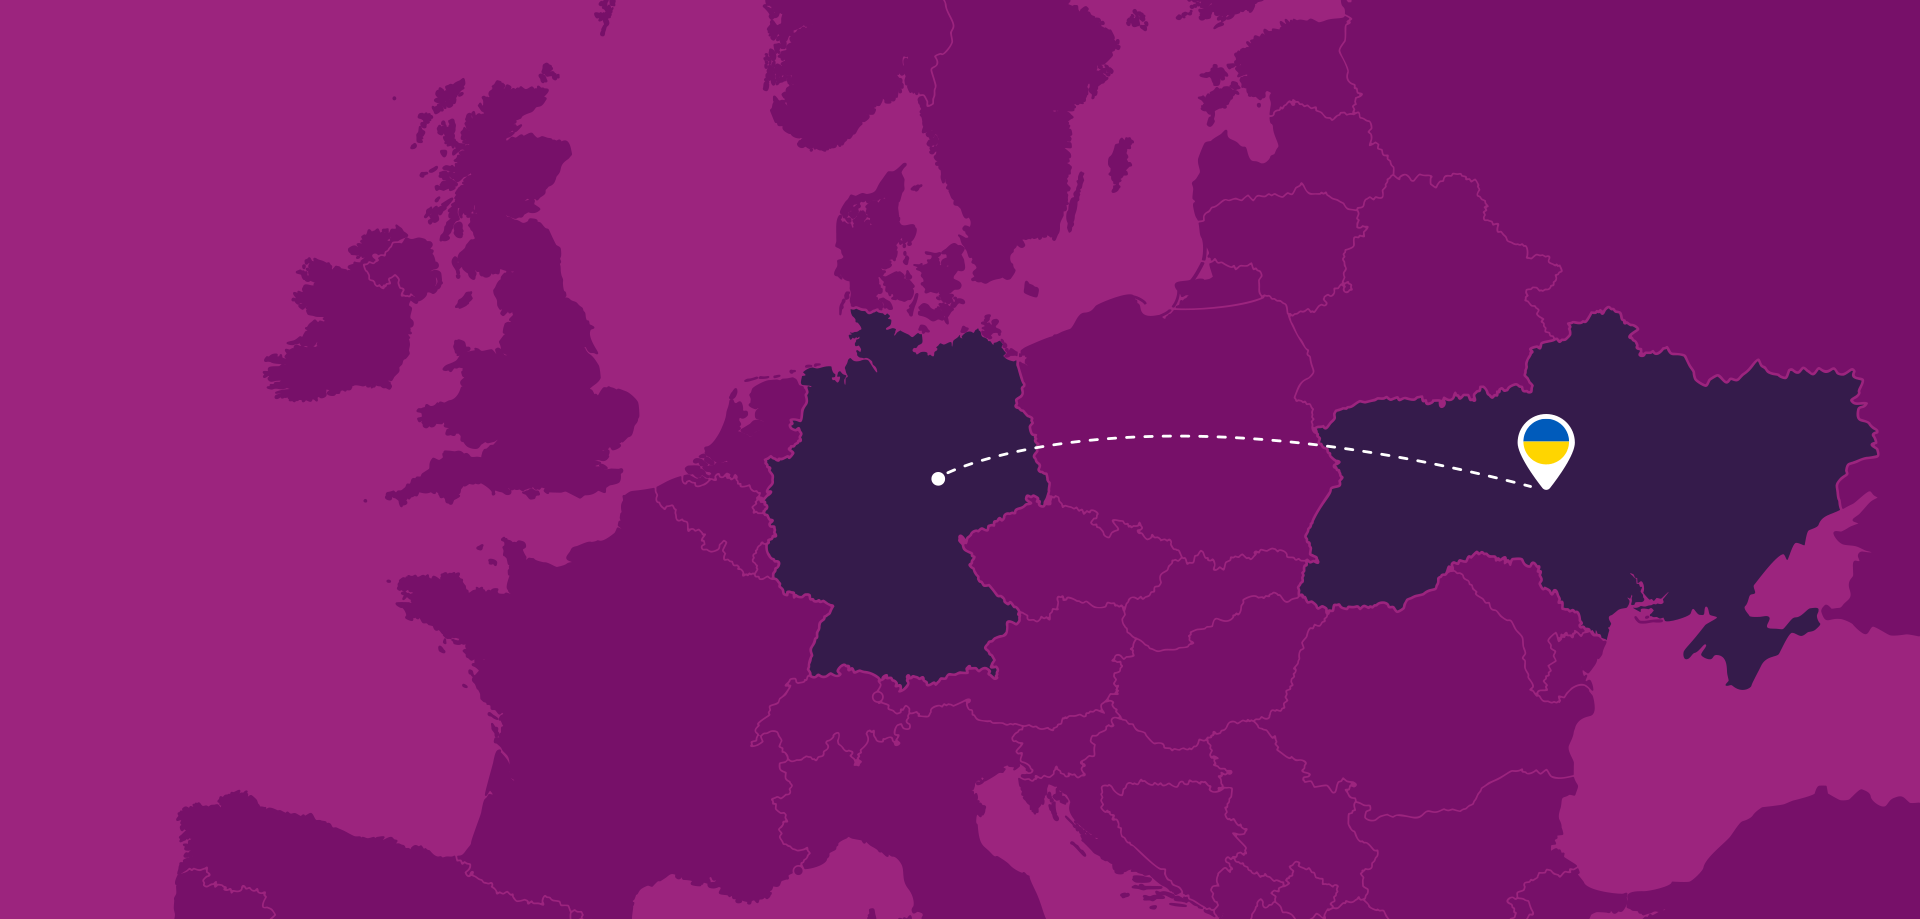 Europakarte, die eine Verbindung von Deutschland in die Ukraine zeigt